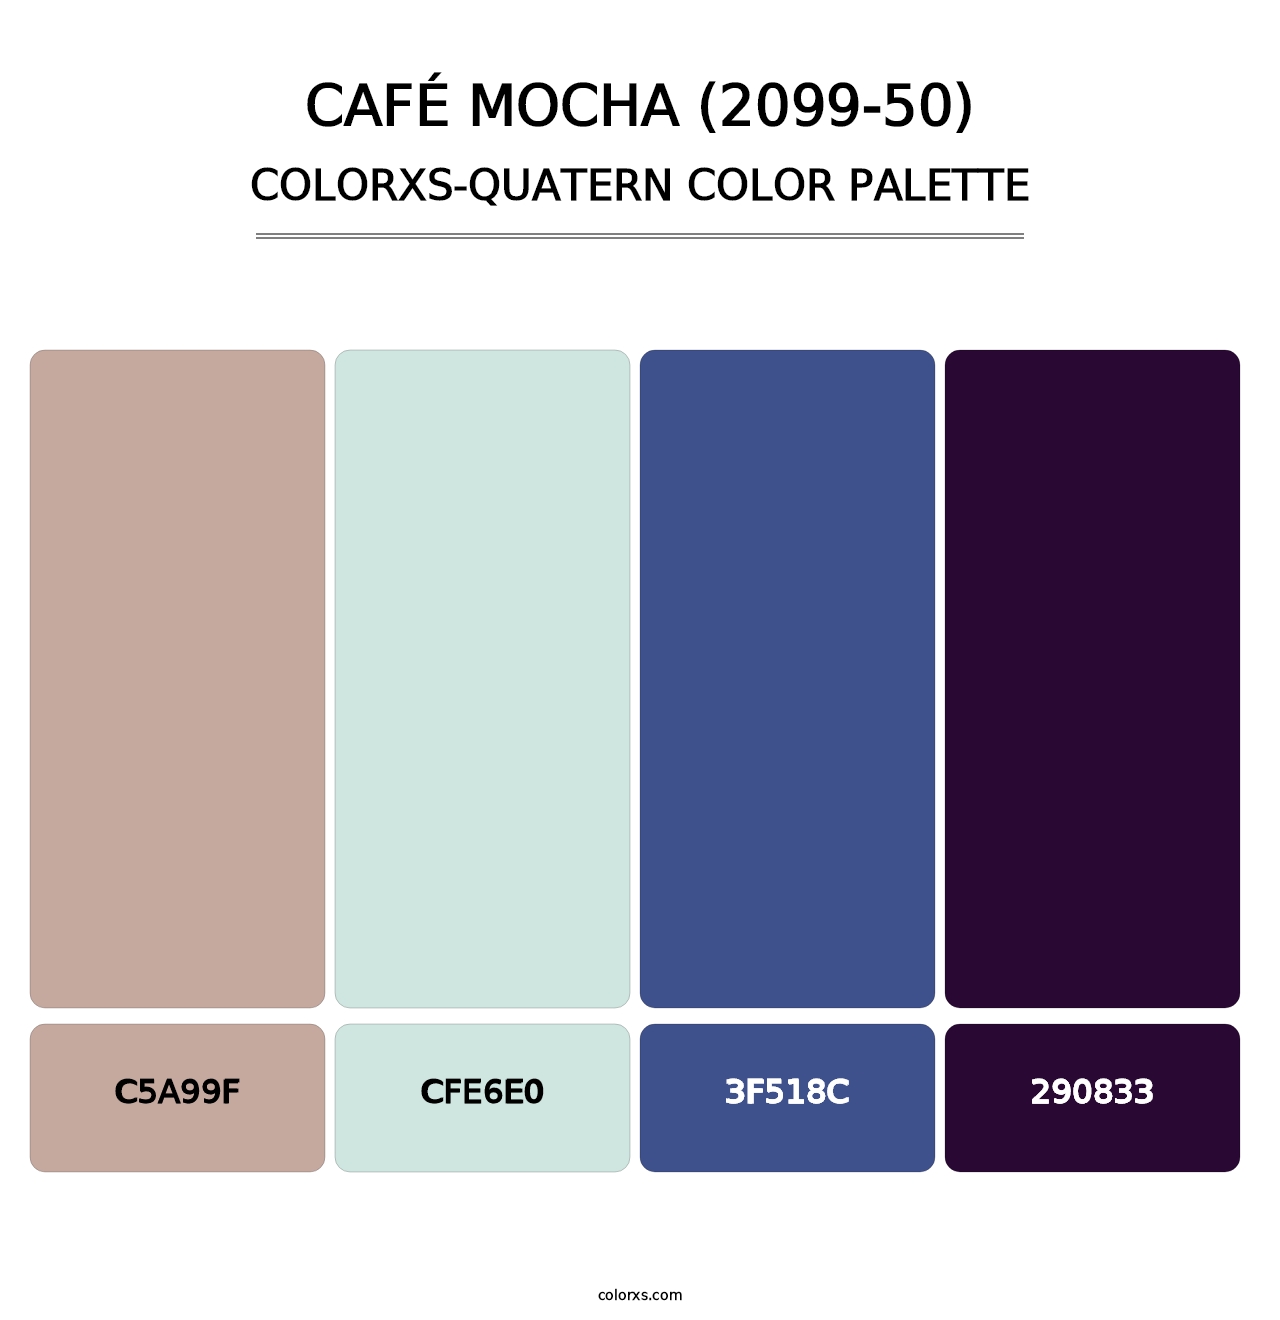 Café Mocha (2099-50) - Colorxs Quatern Palette